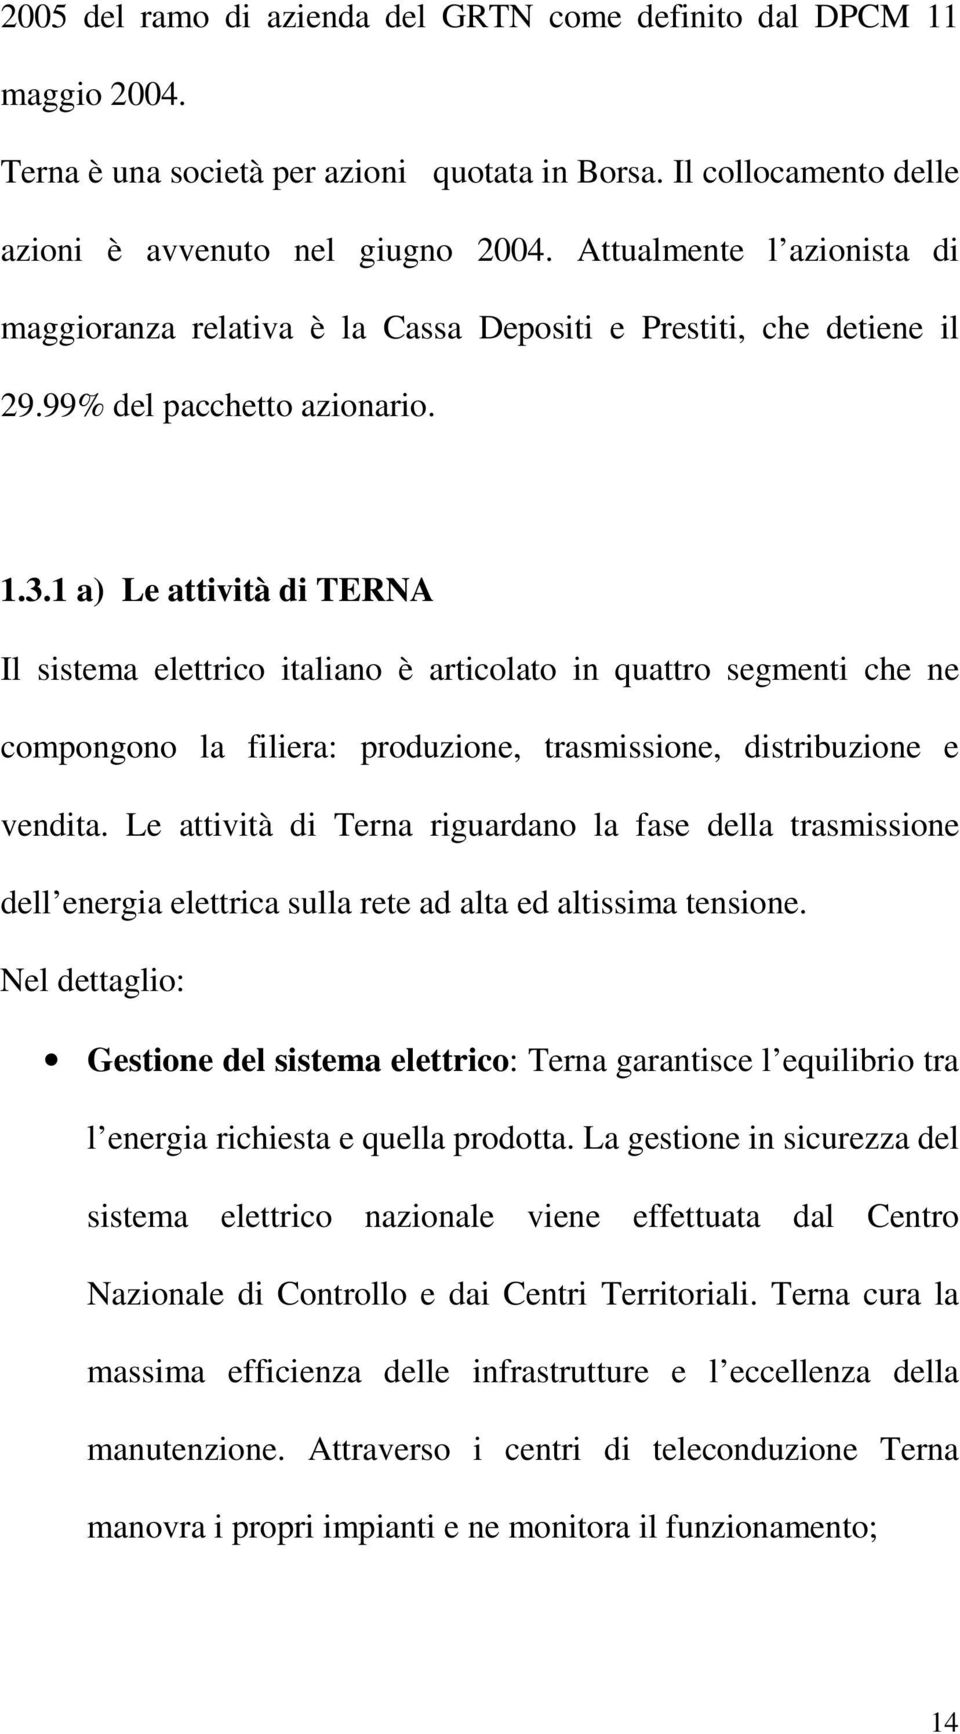 1 a) Le attività di TERNA Il sistema elettrico italiano è articolato in quattro segmenti che ne compongono la filiera: produzione, trasmissione, distribuzione e vendita.